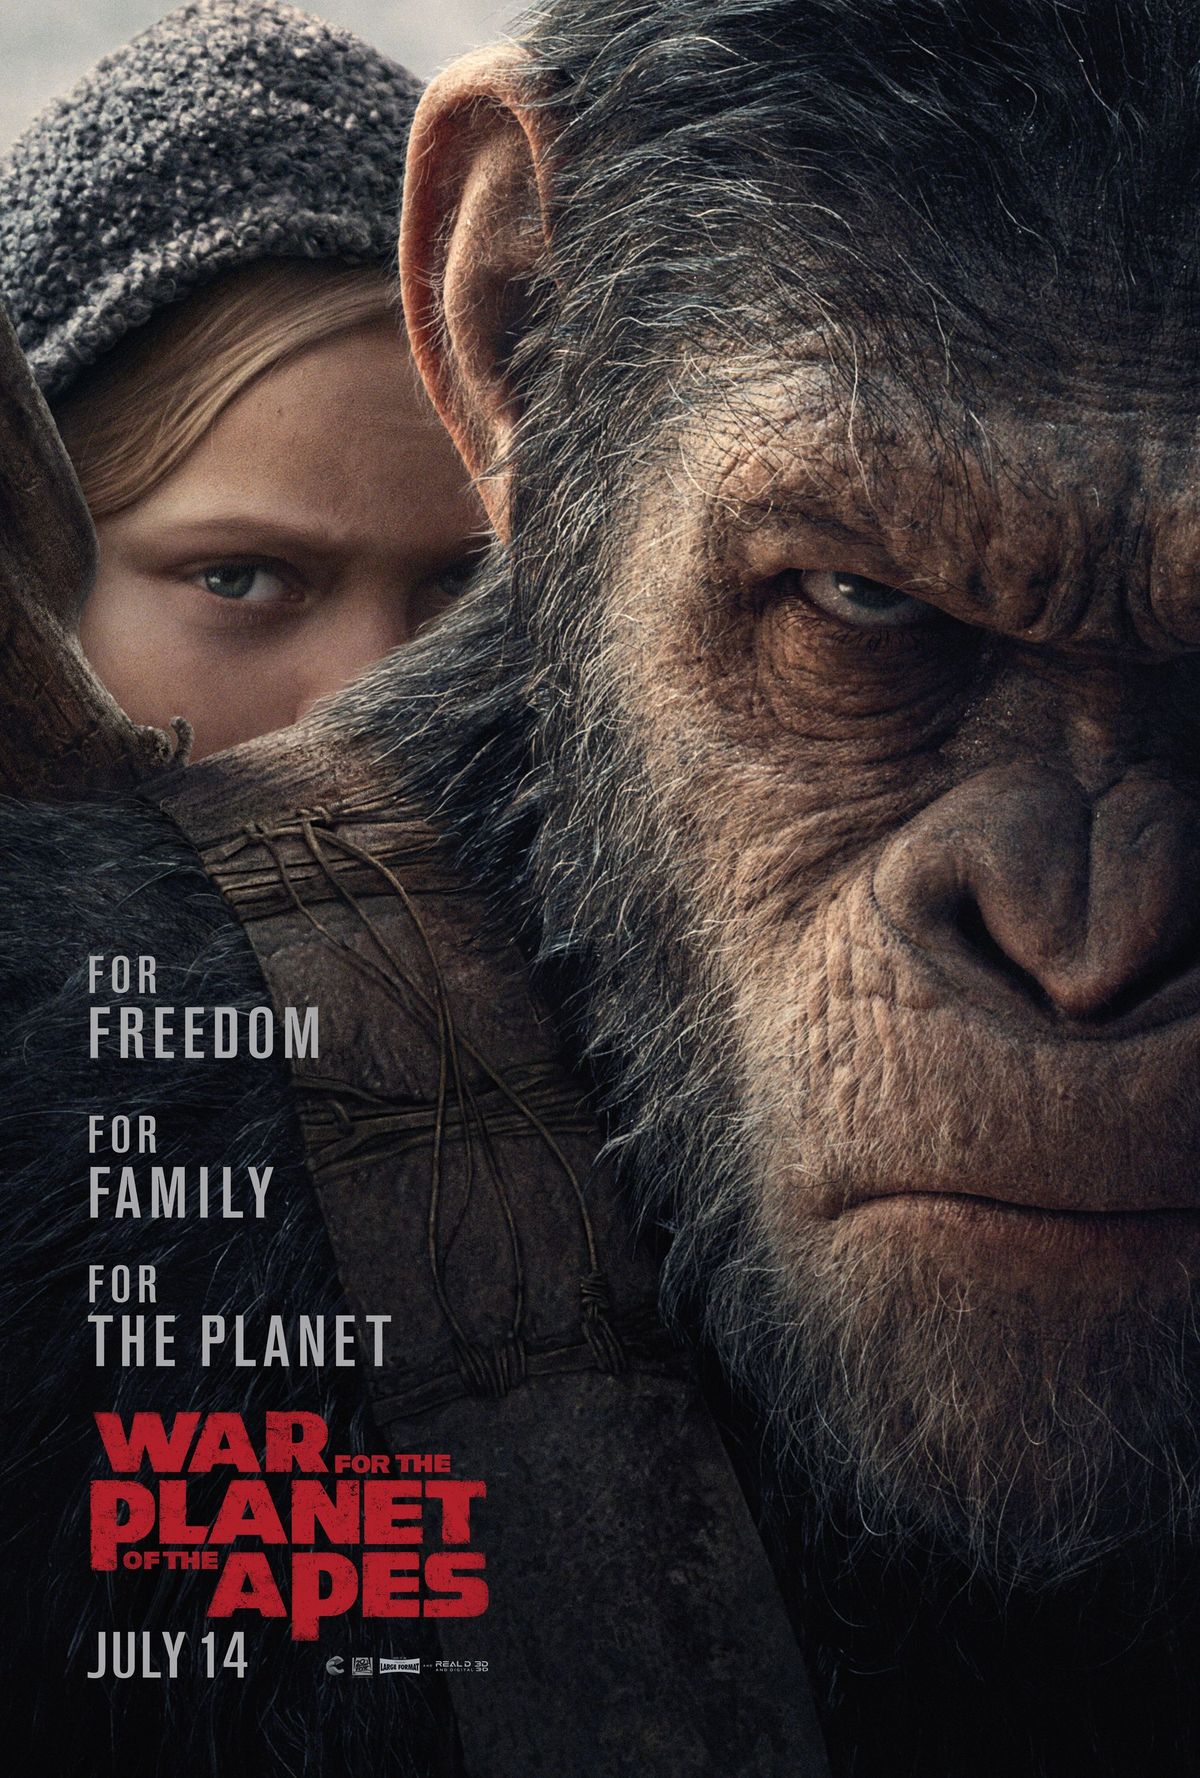 La guerra pel planeta dels simis estrena nou cartell